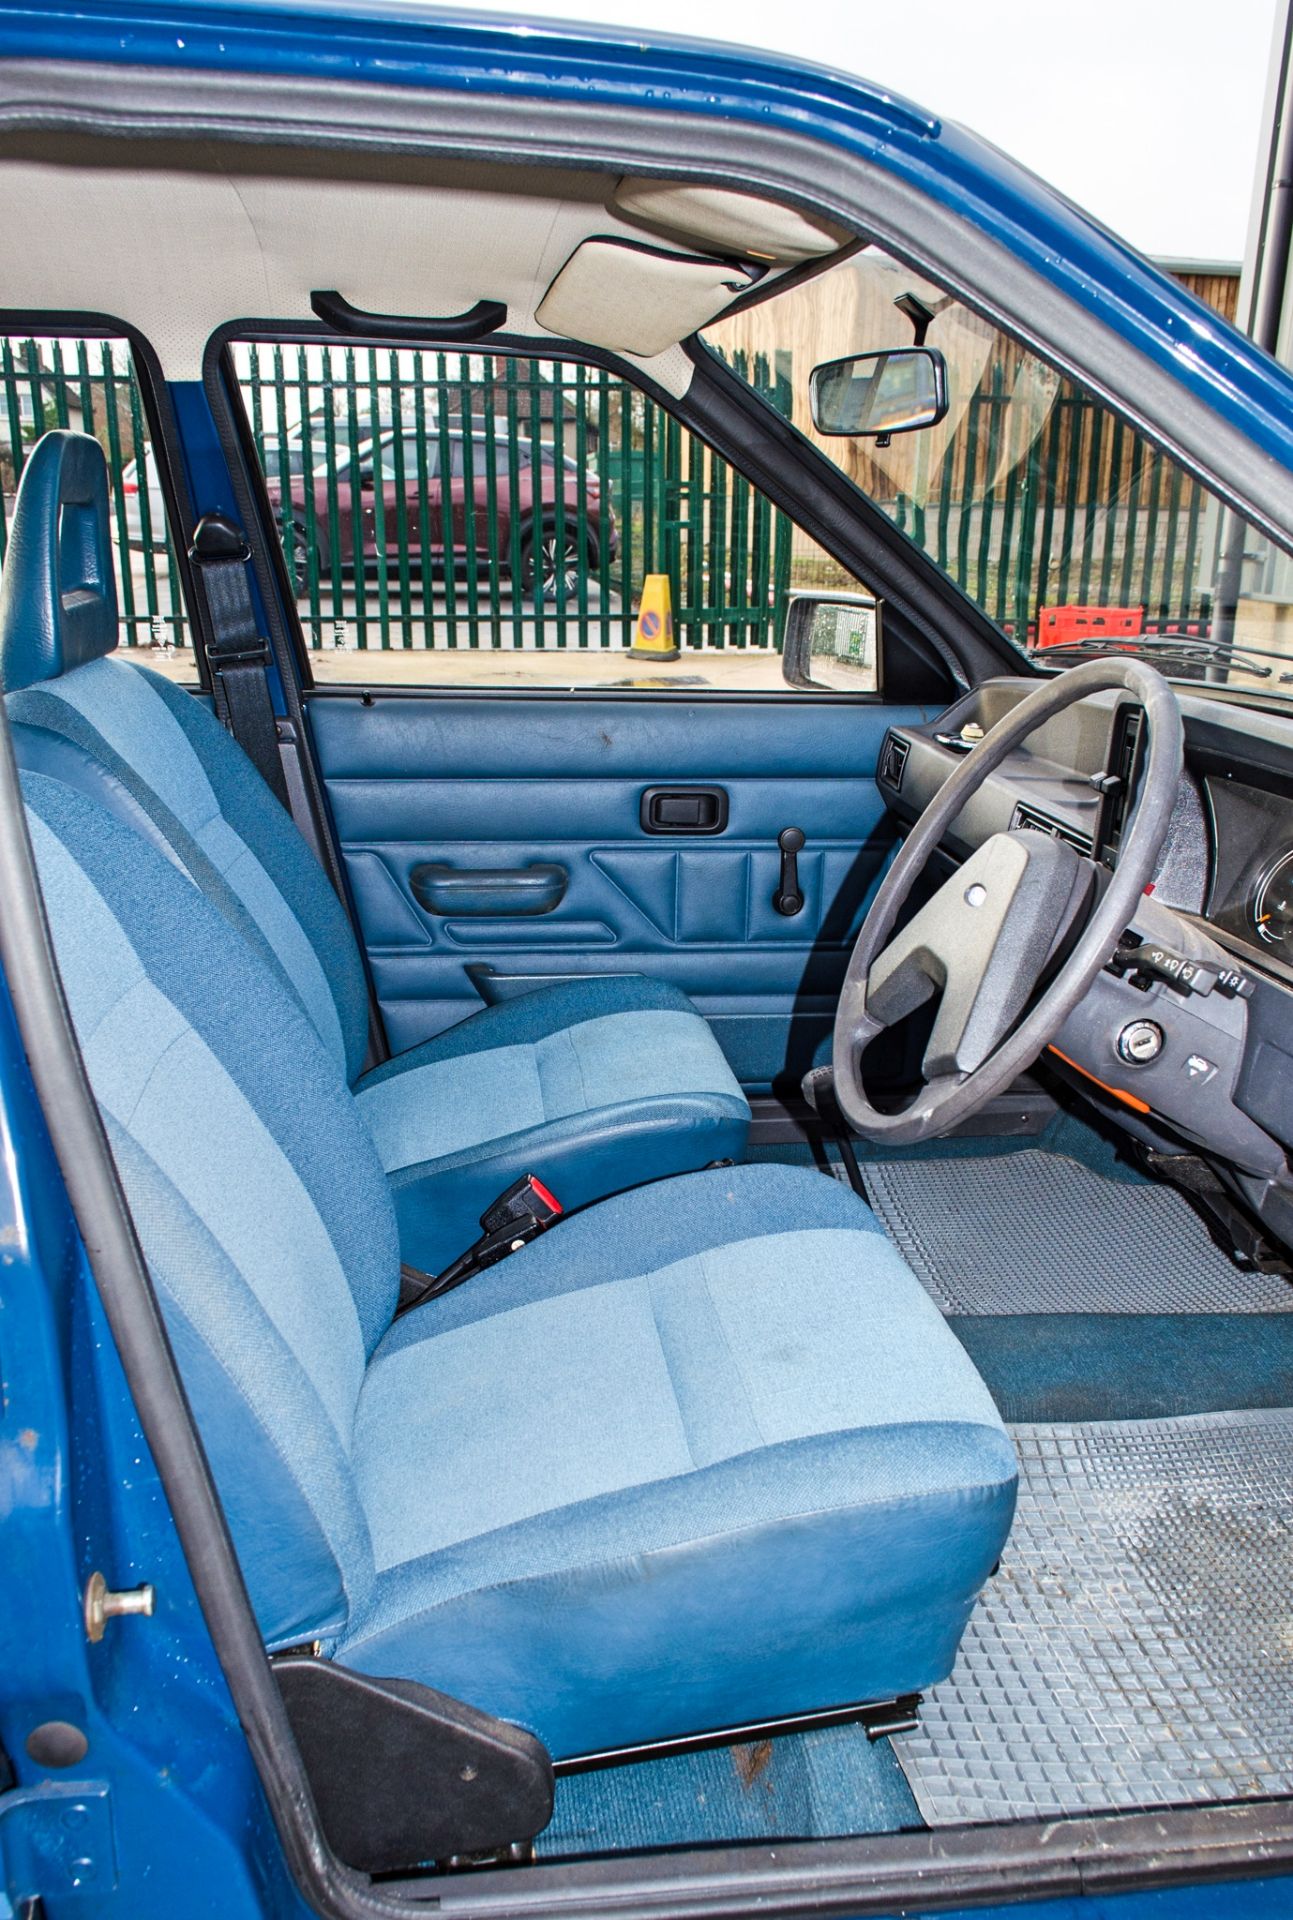 1982 Ford Escort 1.1 L 1100 cc 5 door hatchback 0nly 2017 miles - Image 28 of 50